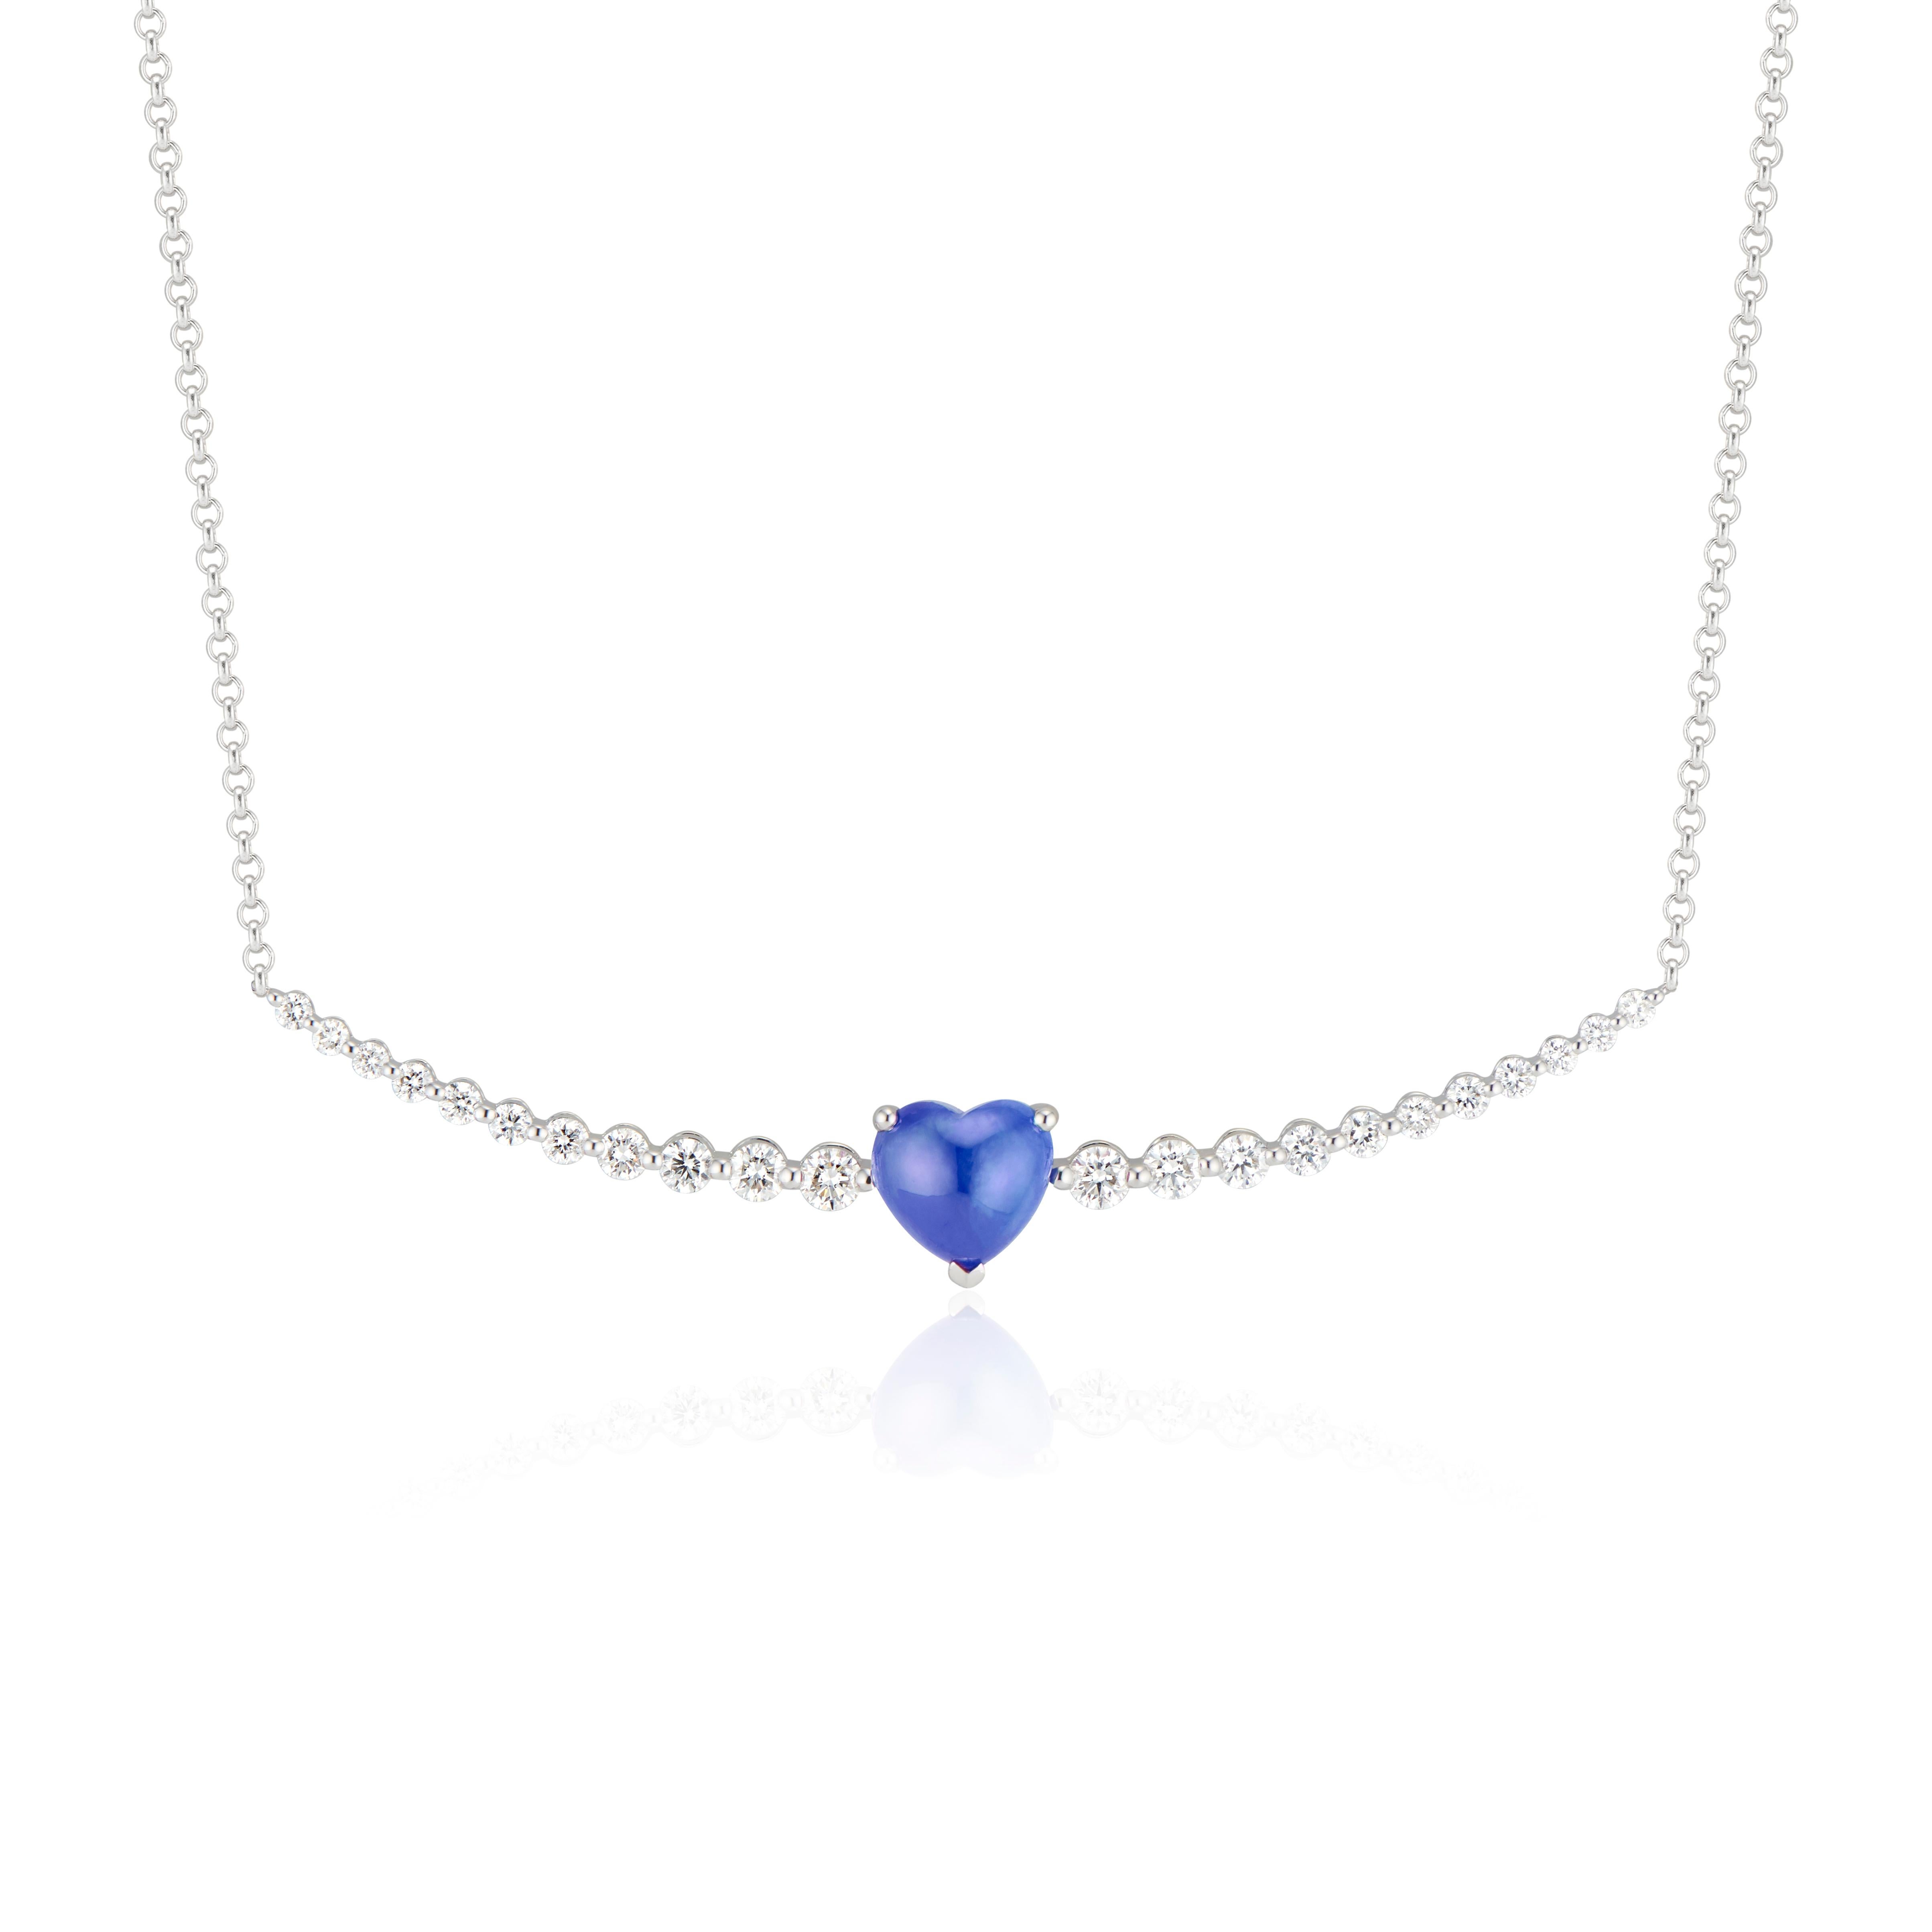 Der Ring Floating Sapphire Heart and Diamond von Ri Noor hebt die Schönheit von Natursteinen hervor und lenkt die Aufmerksamkeit auf die dramatischen, satten Blautöne des herzförmigen Saphirs. Der aus 18 Karat Weißgold gefertigte Ring mit seinen